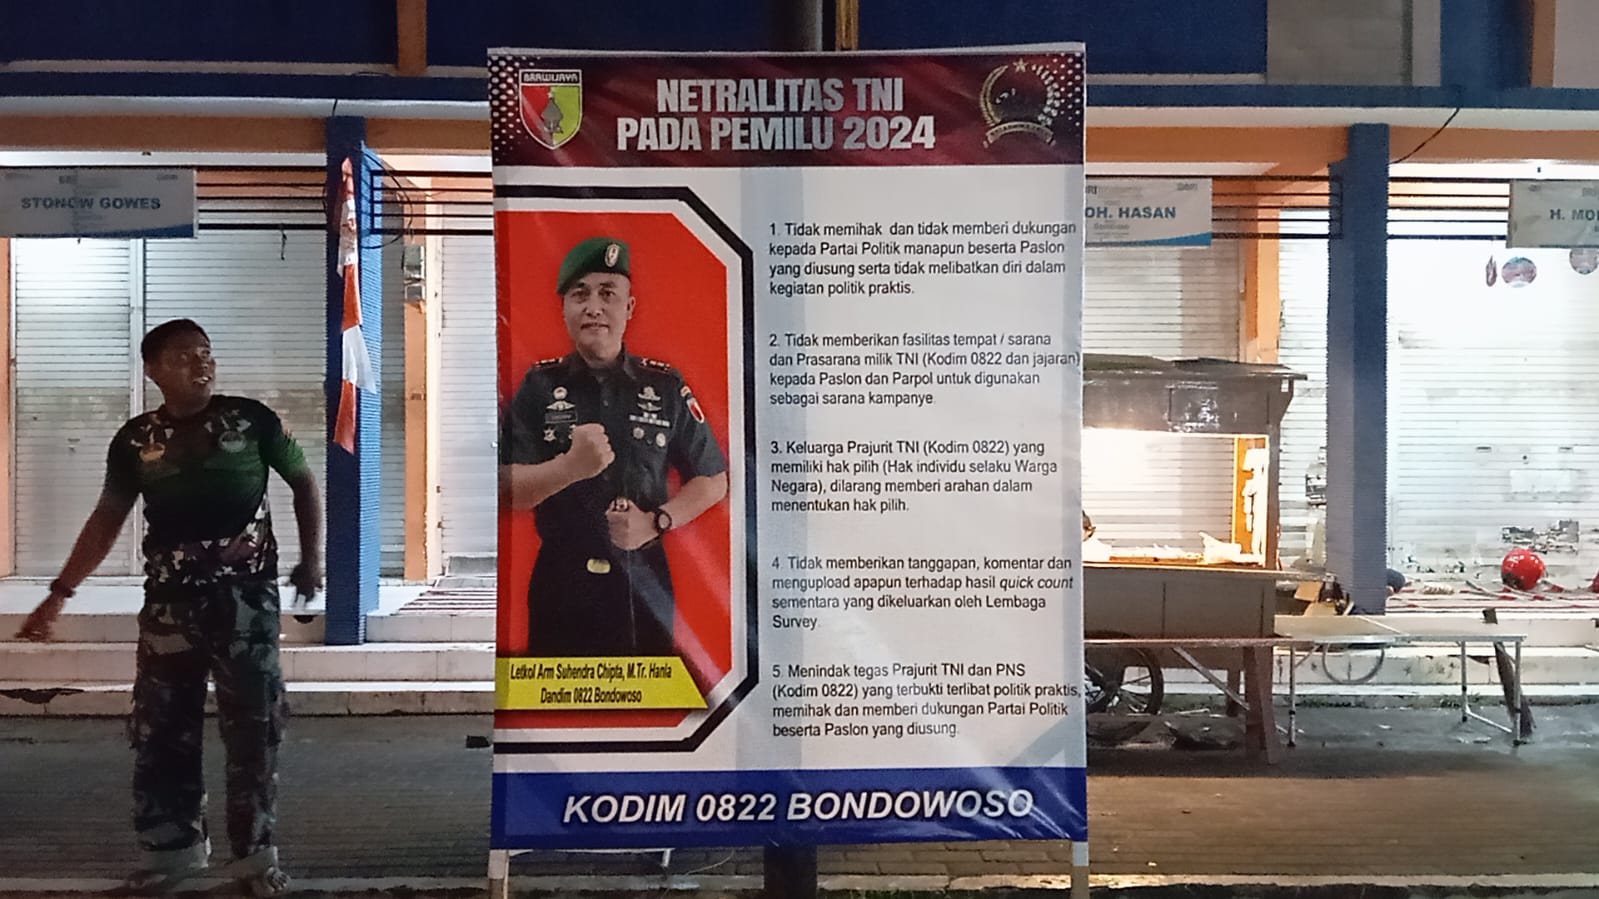 Tegaskan Netralitas, Jajaran Kodim 0822 Bondowoso Pasang Banner Netralitas TNI